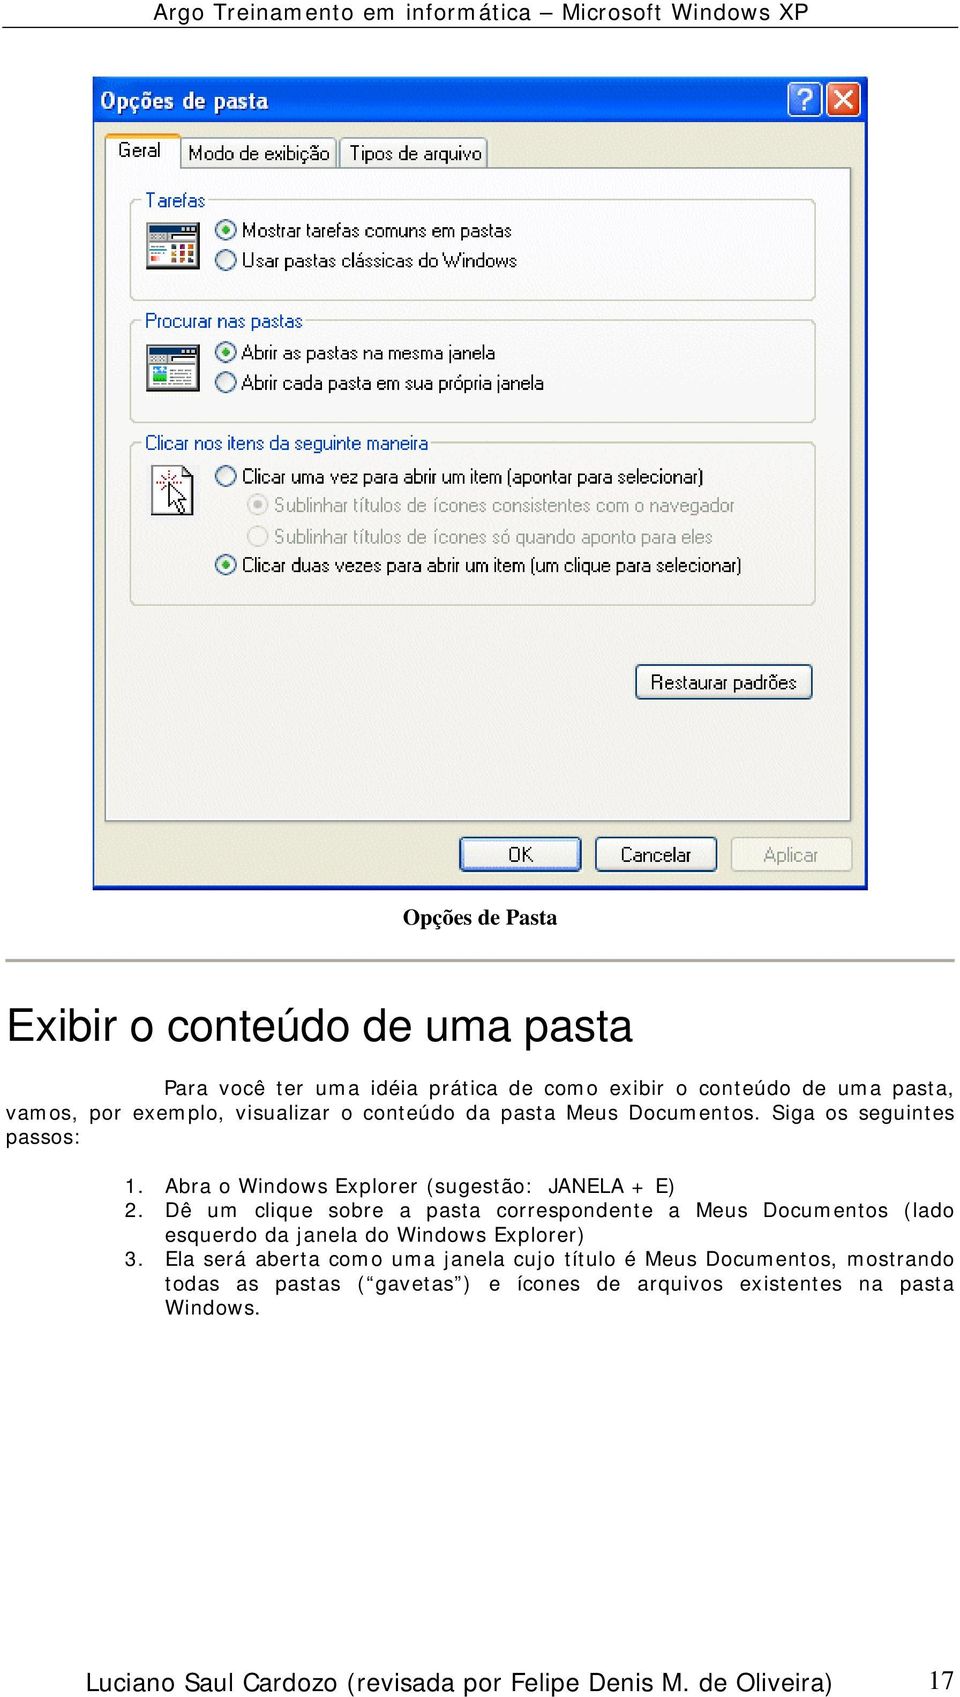 Dê um clique sobre a pasta correspondente a Meus Documentos (lado esquerdo da janela do Windows Explorer) 3.